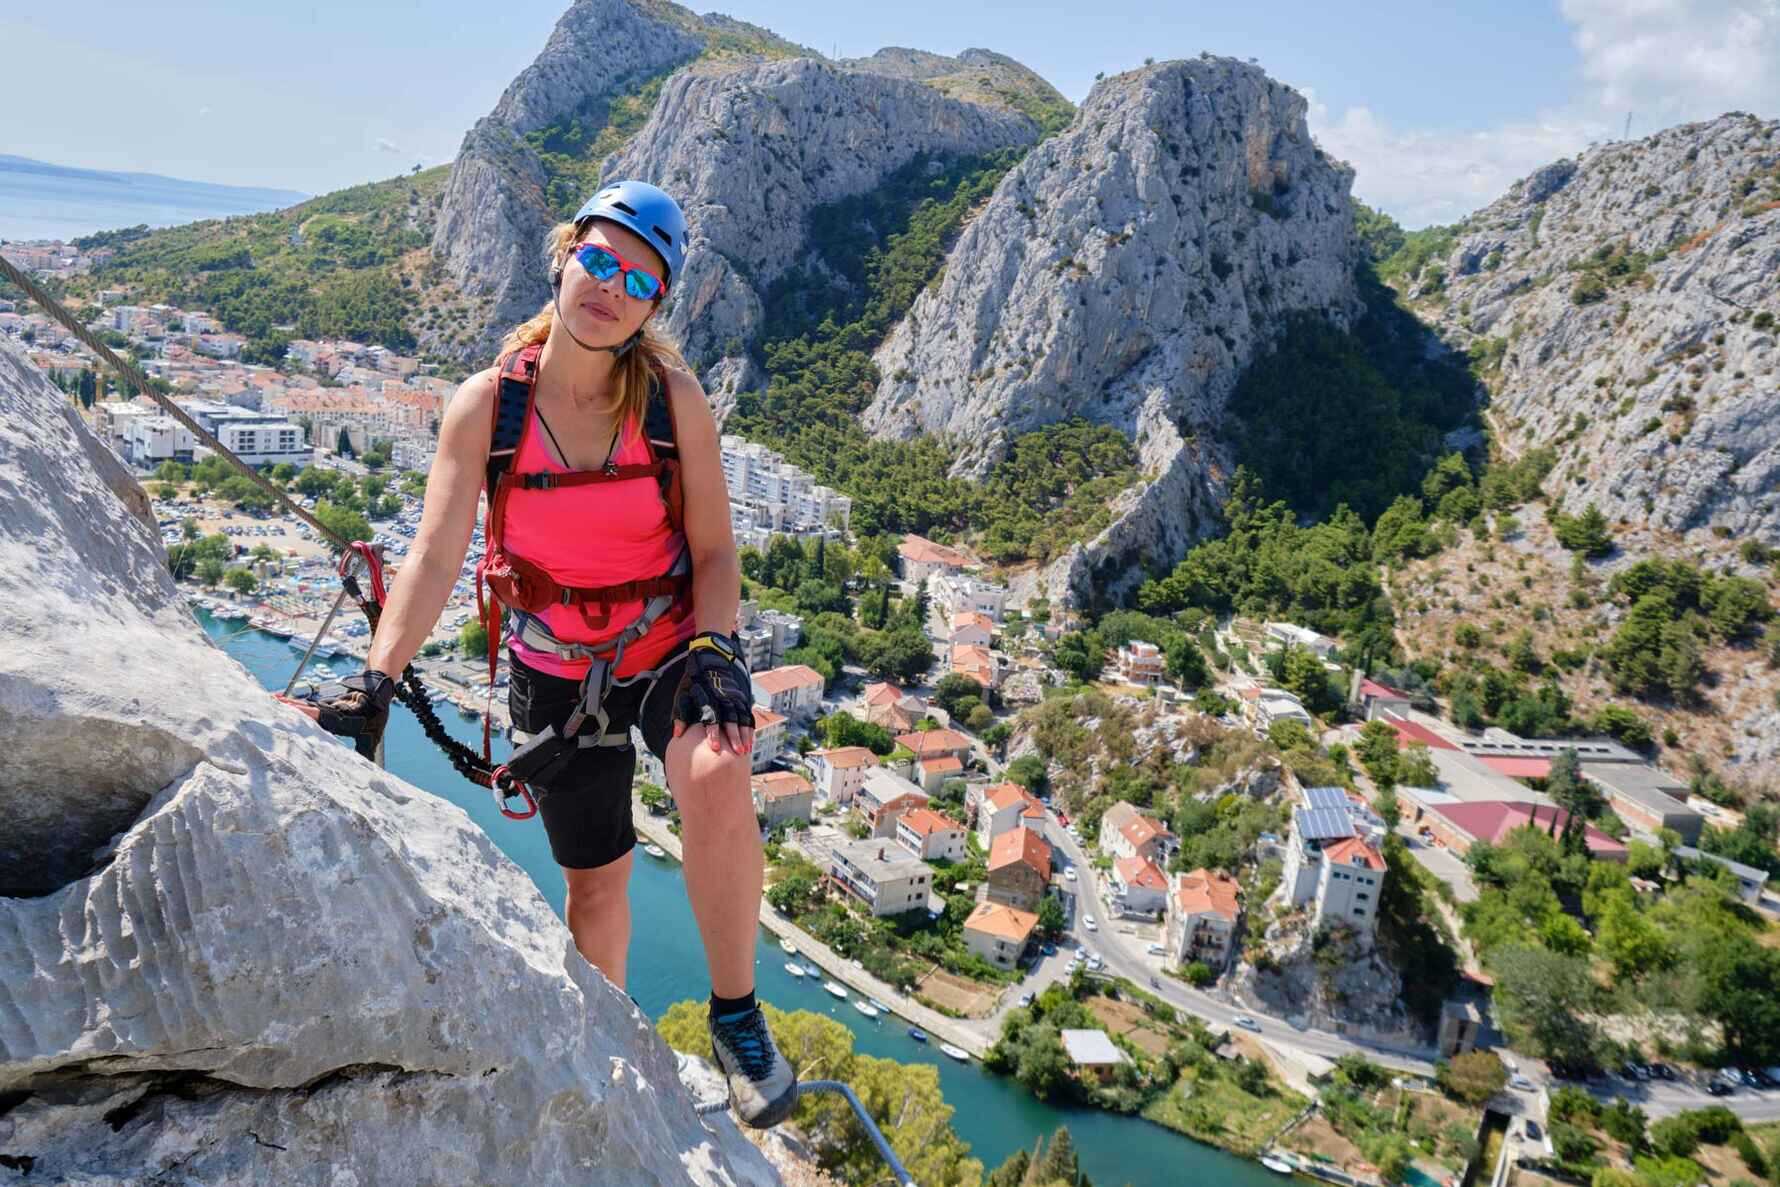 A lady rock climbing in Omis, Croatia